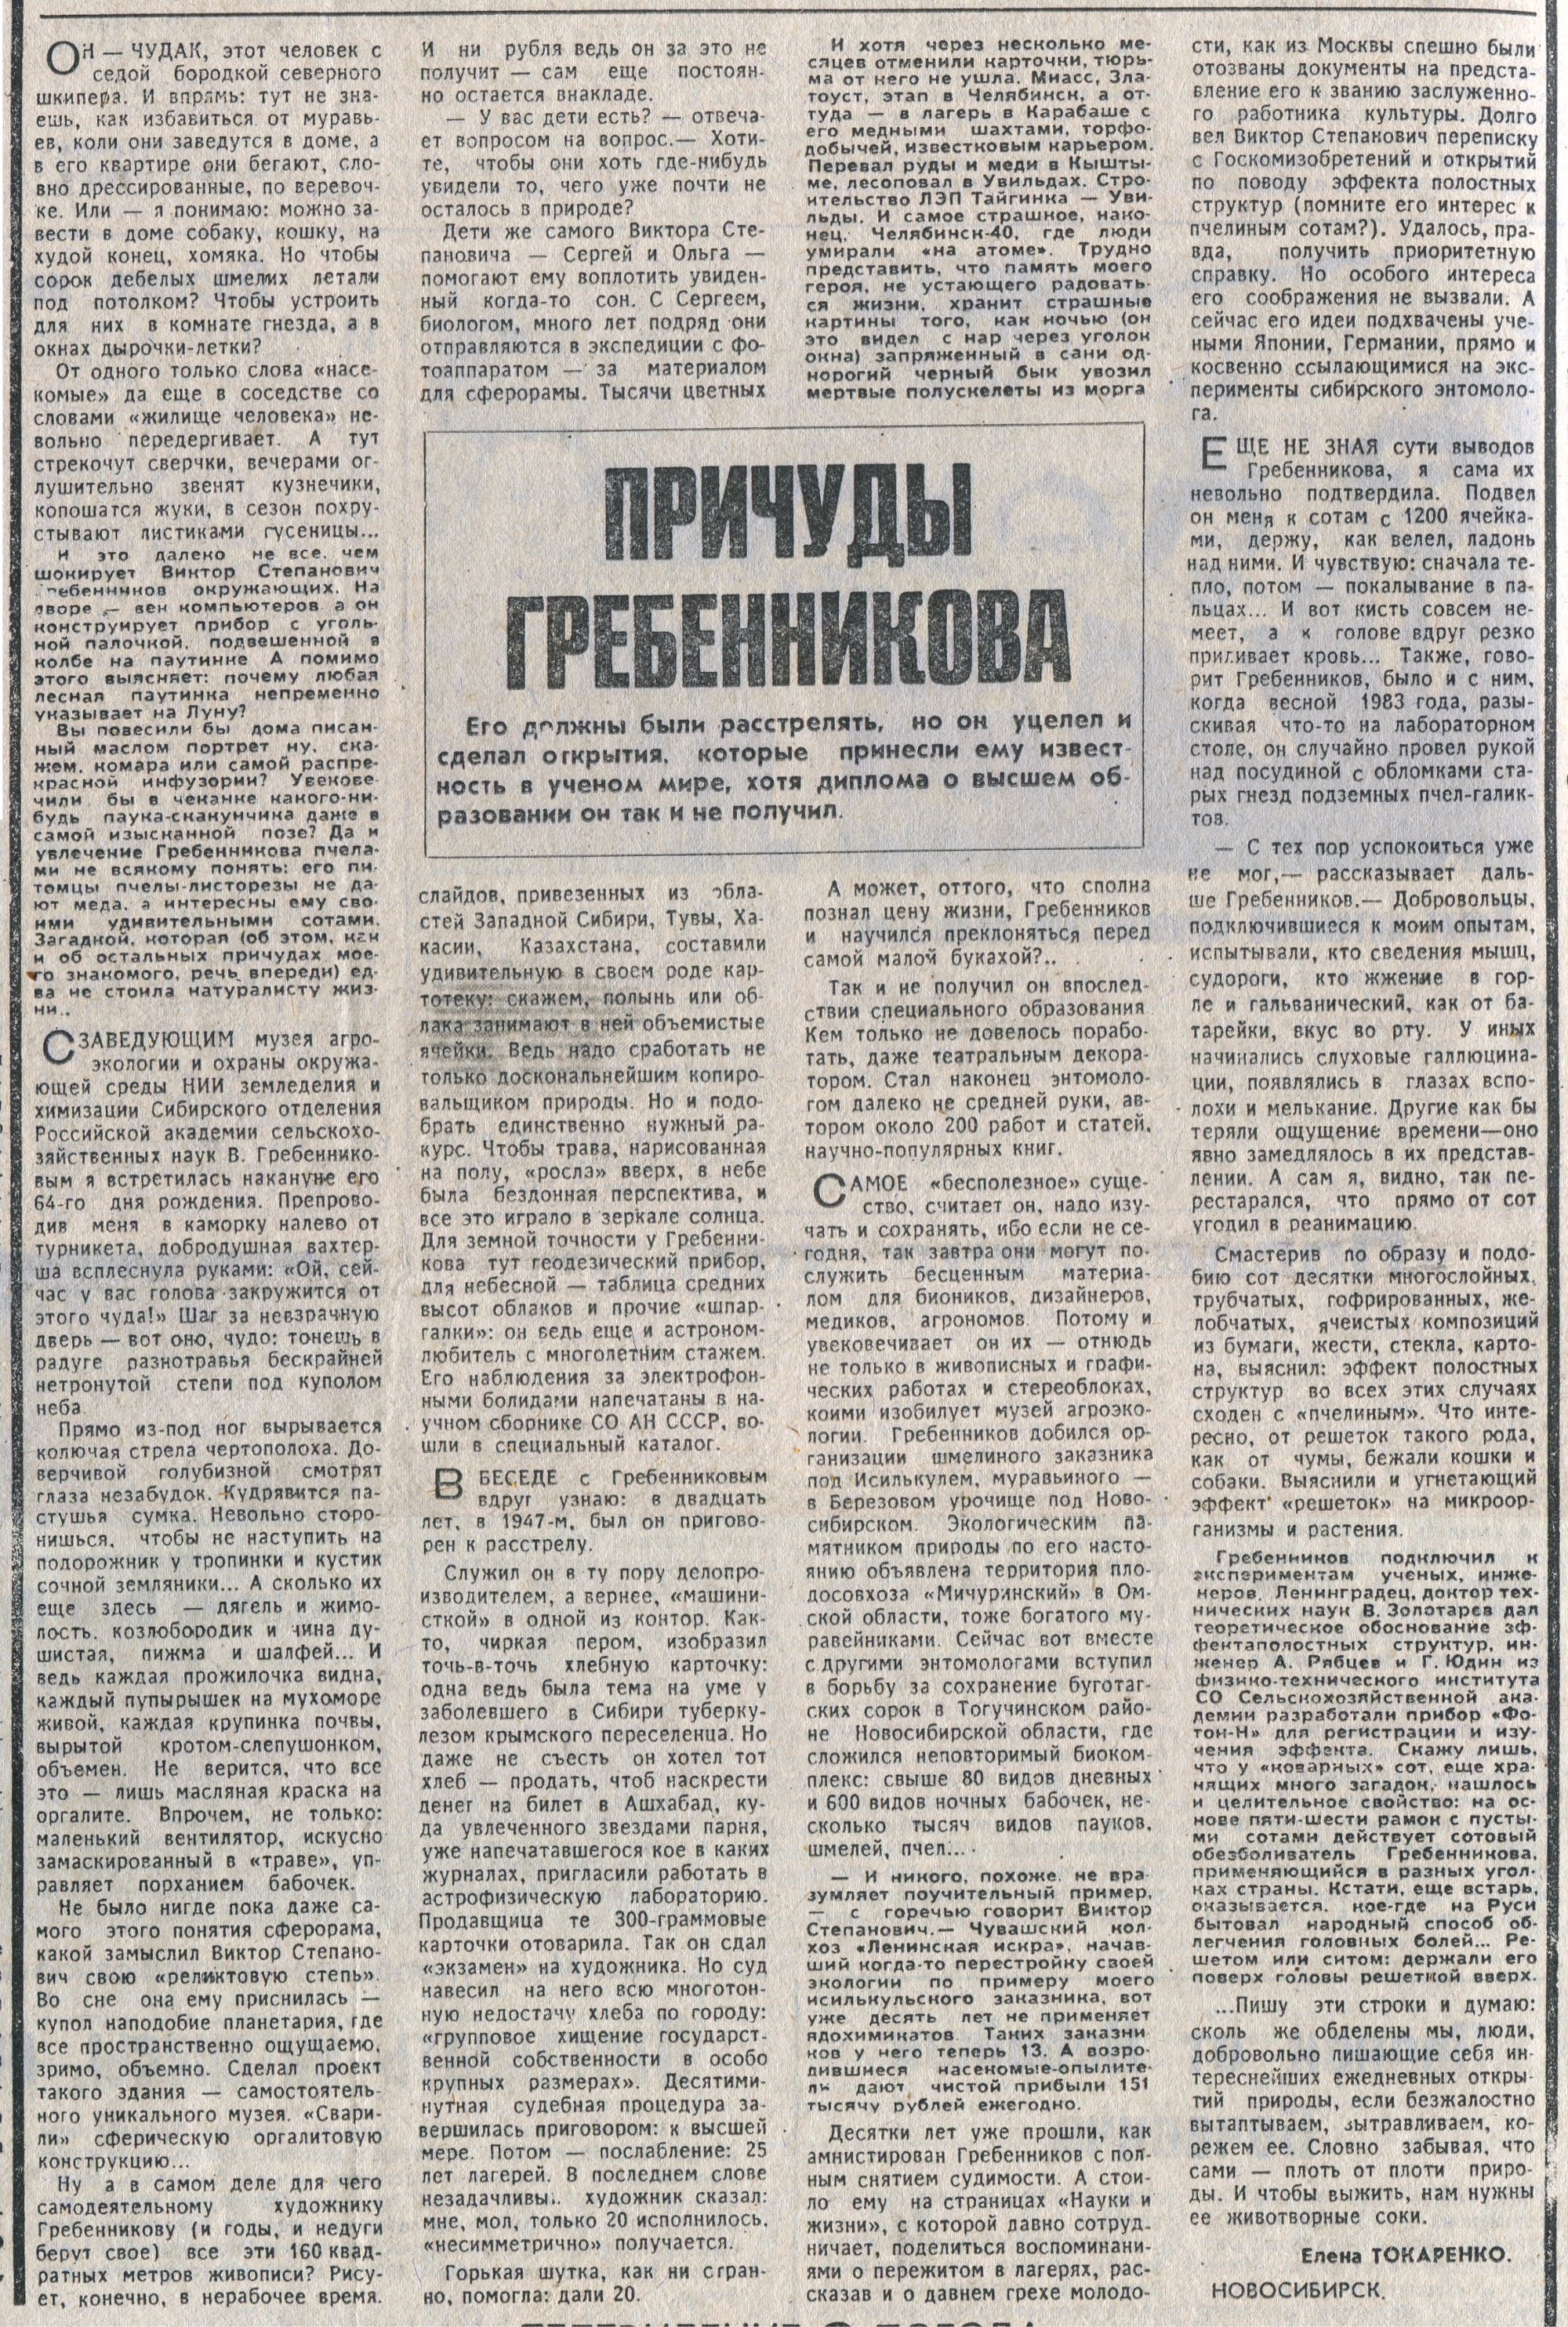 Причуды Гребенникова. Е.Токаренко. Труд, 22.05.1991